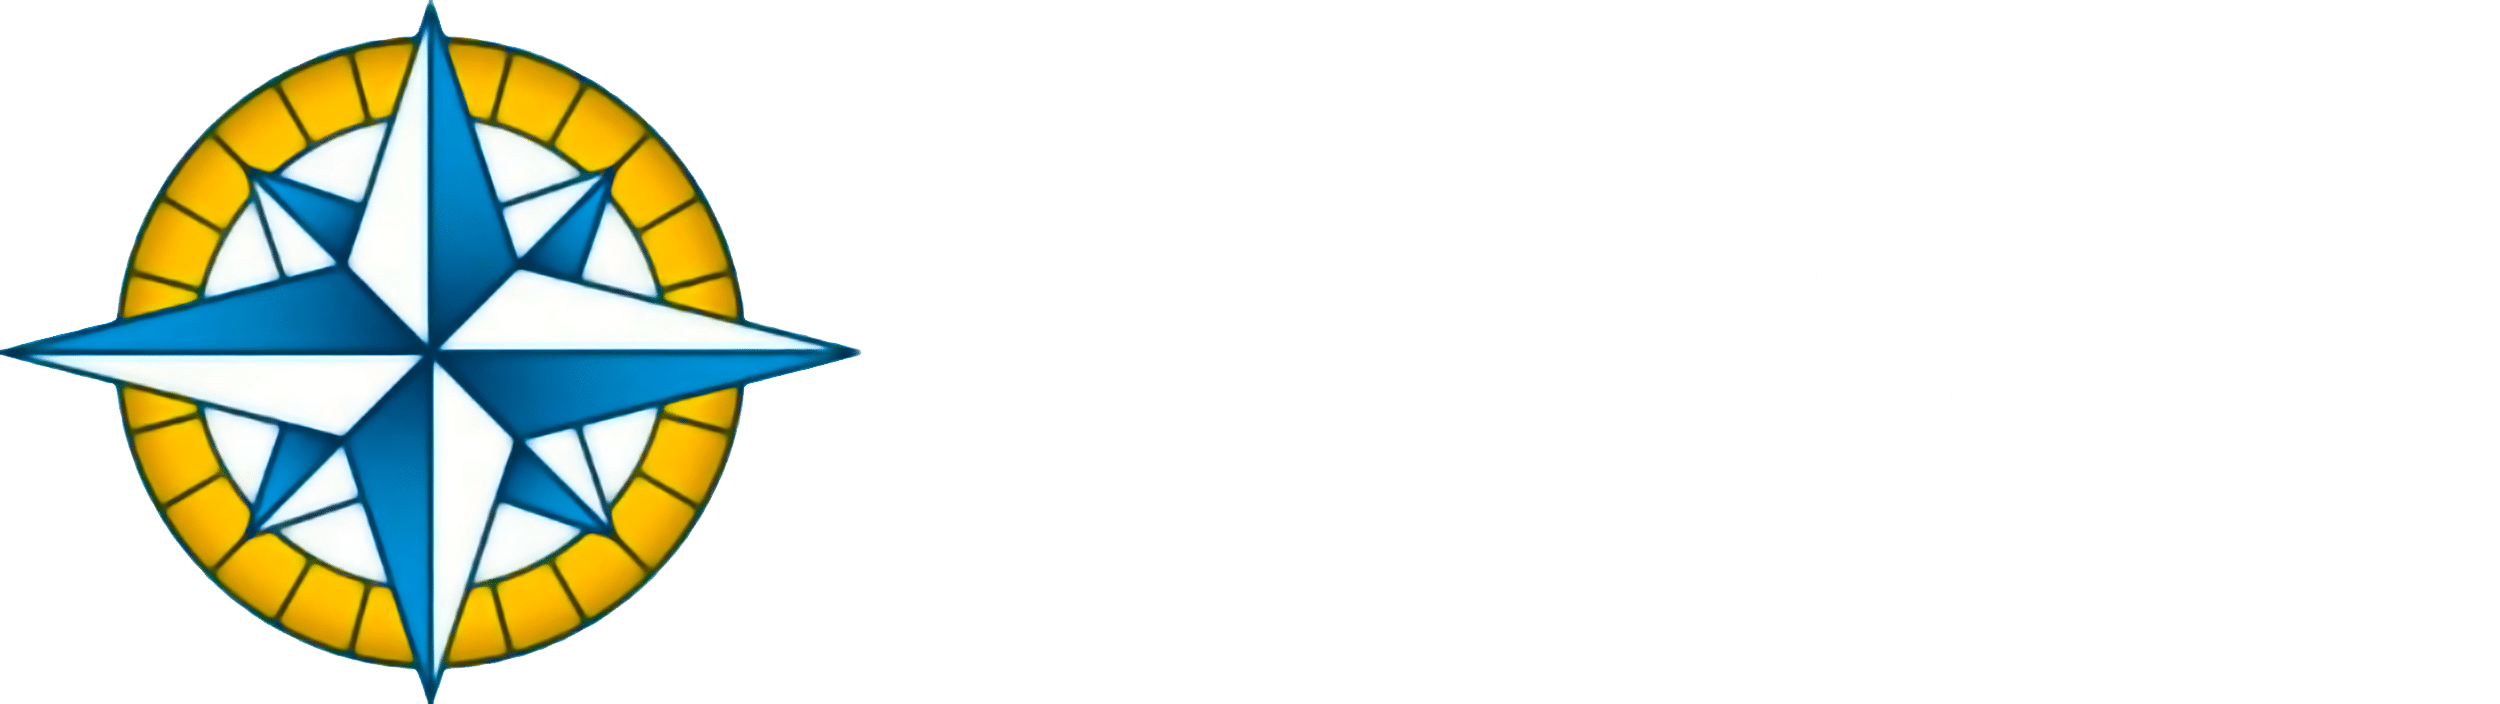 Talent Focus Consulting - Talent Focus Consulting (2500x704)